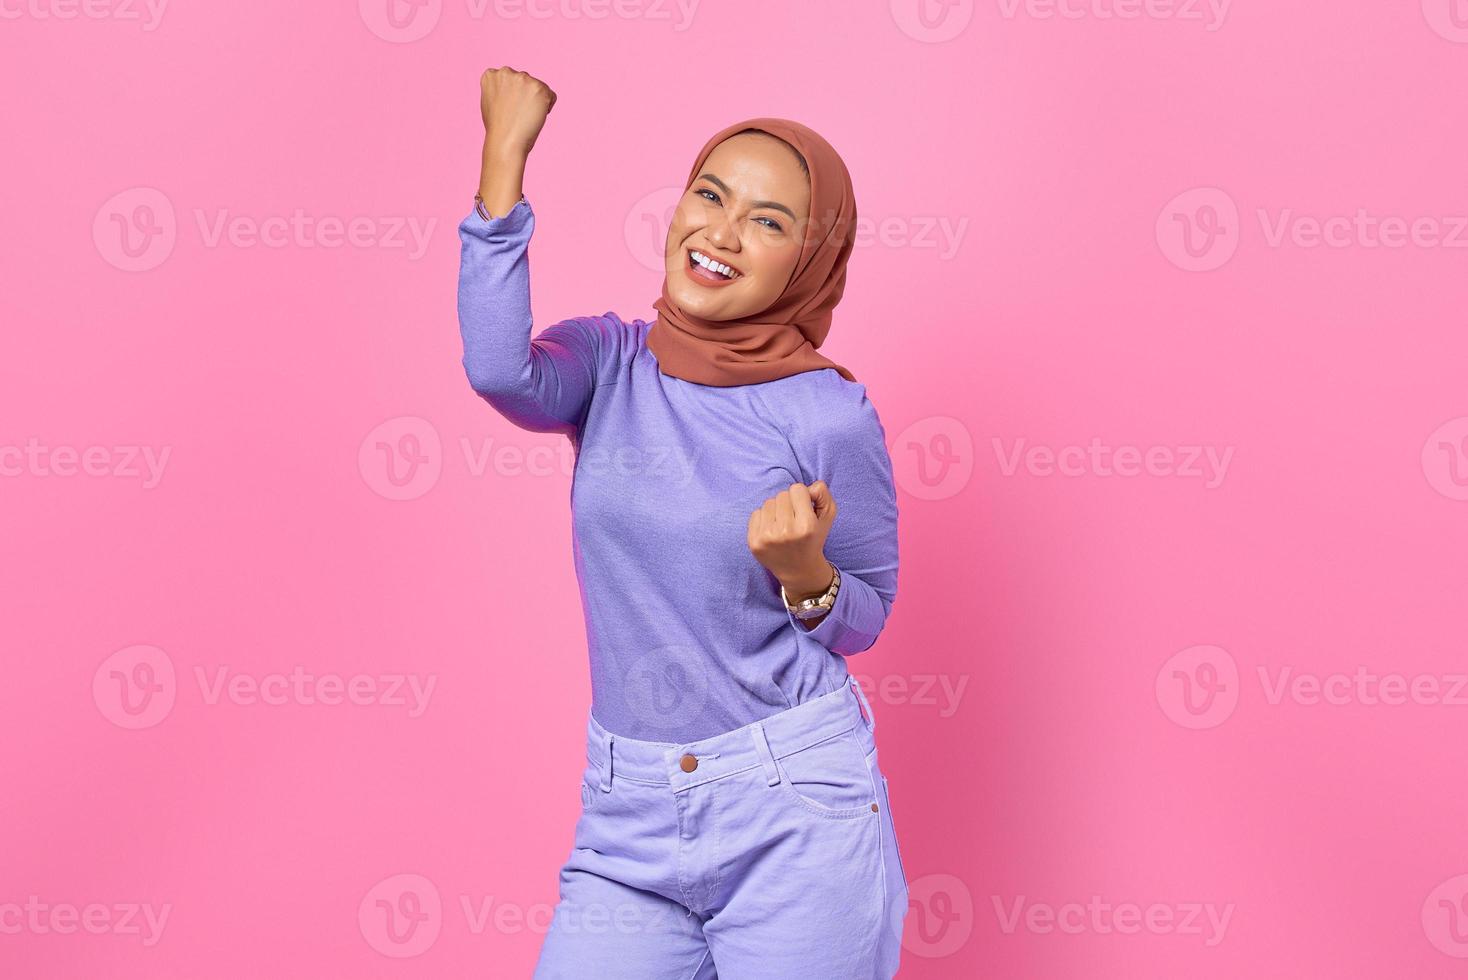 vrolijke jonge aziatische vrouw die de overwinning viert, euforisch over prestatie op roze achtergrond foto